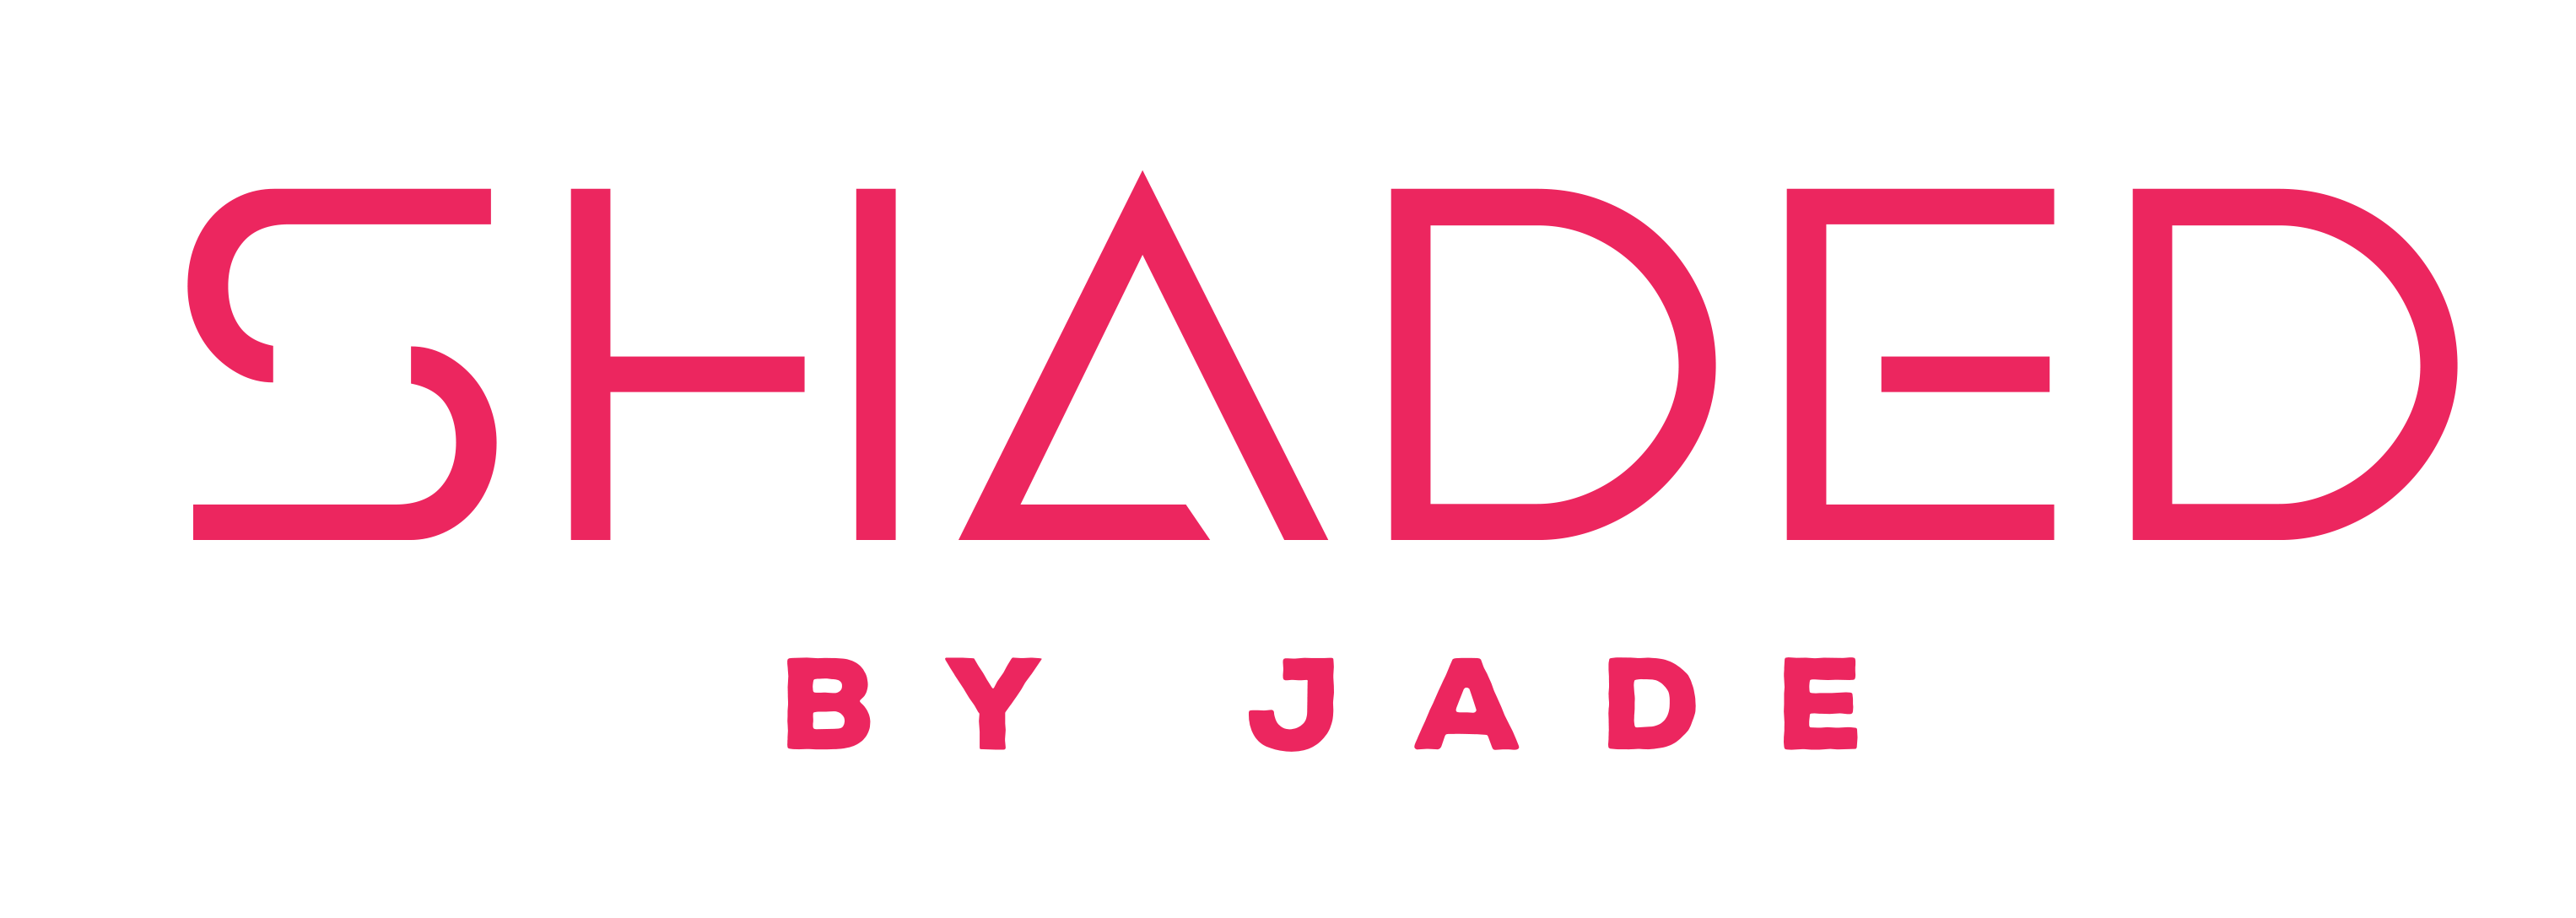 Shaded By Jade